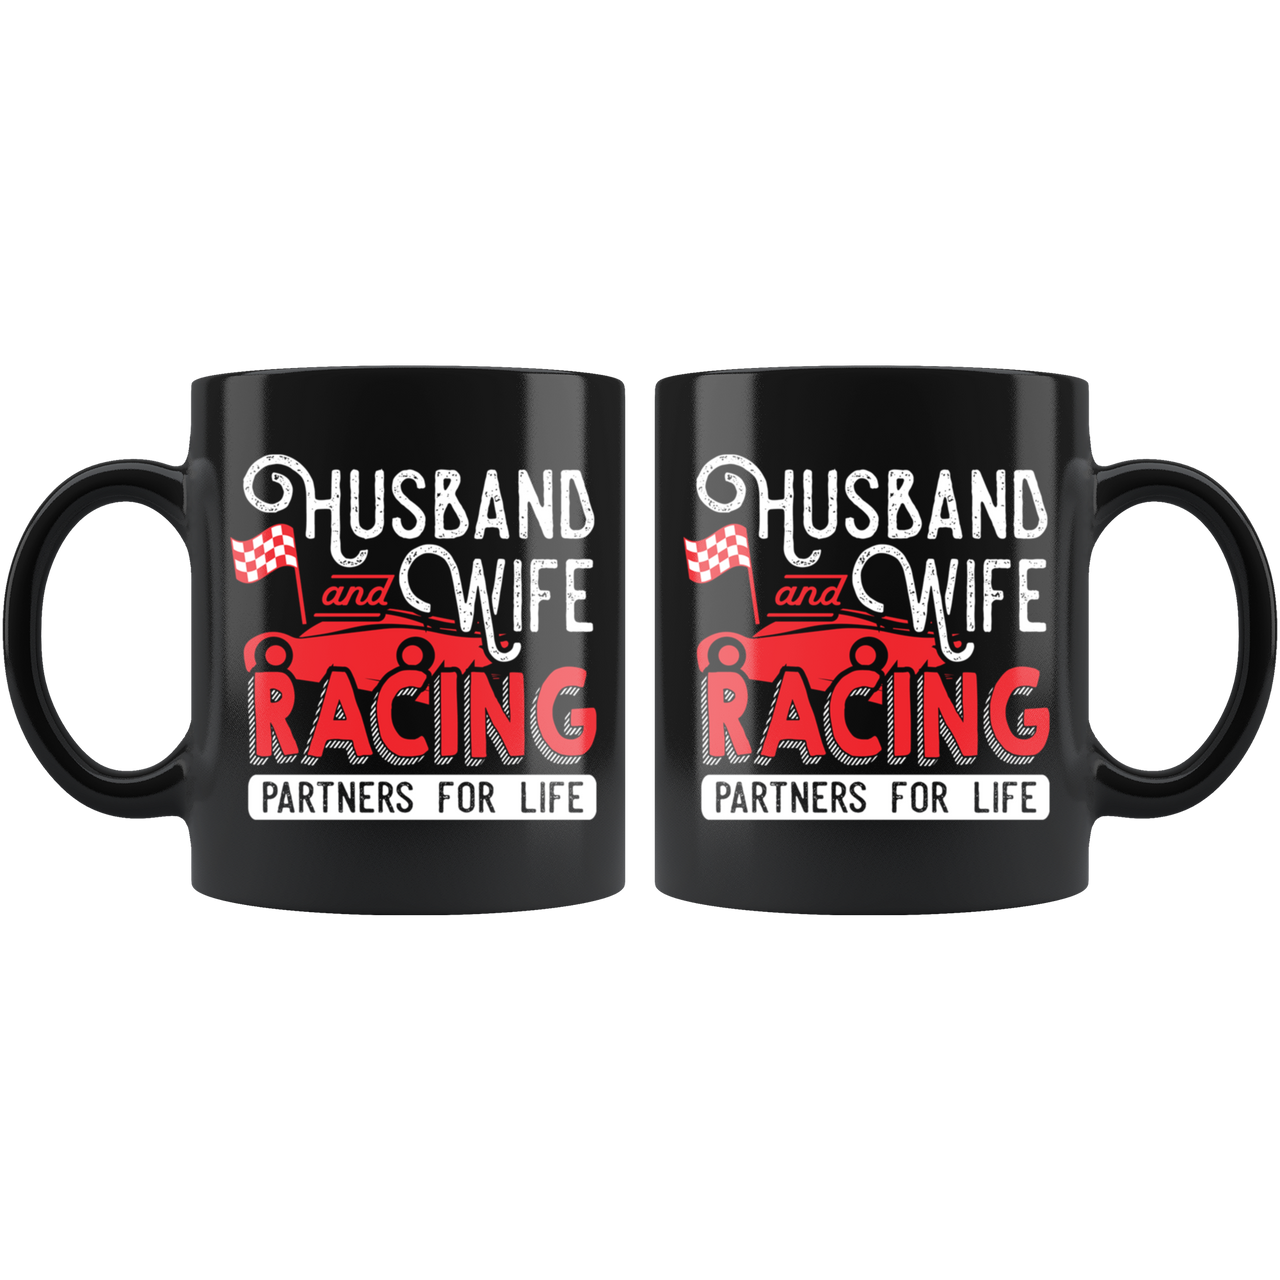 Husband And Wife Racing Partners For Life Mug!